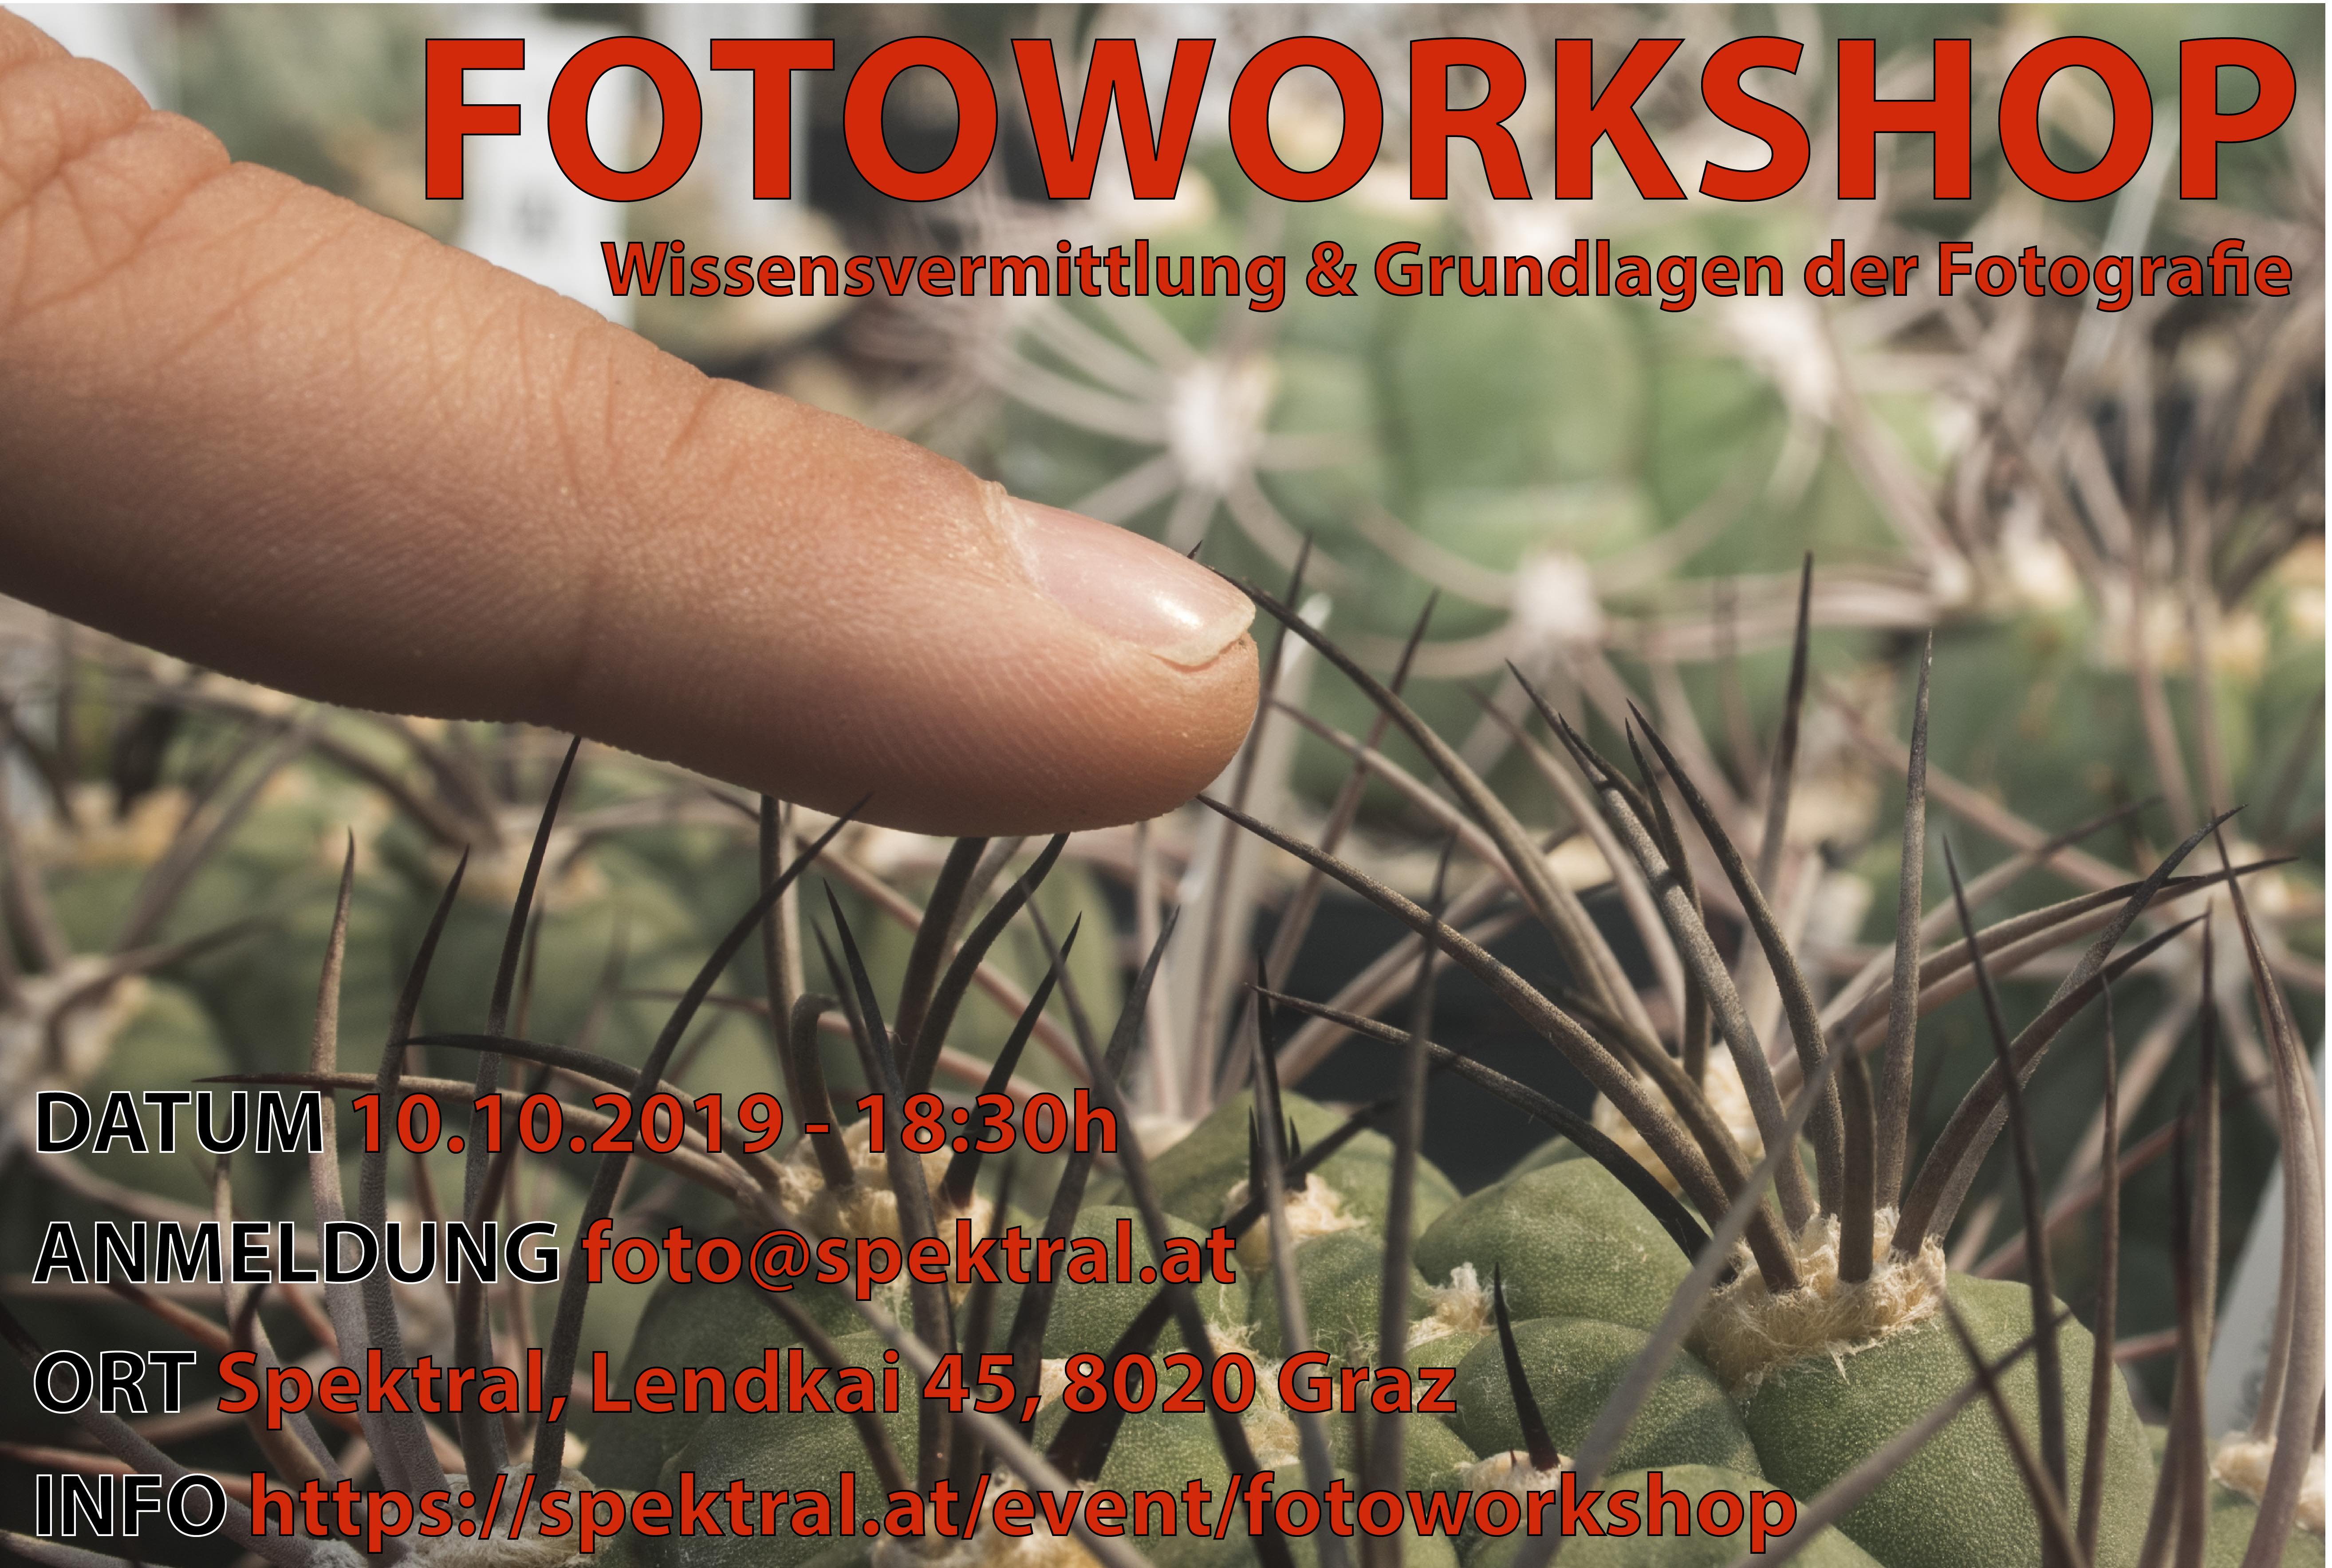 Fotografie Workshop: Wissensvermittlung & Grundlagen